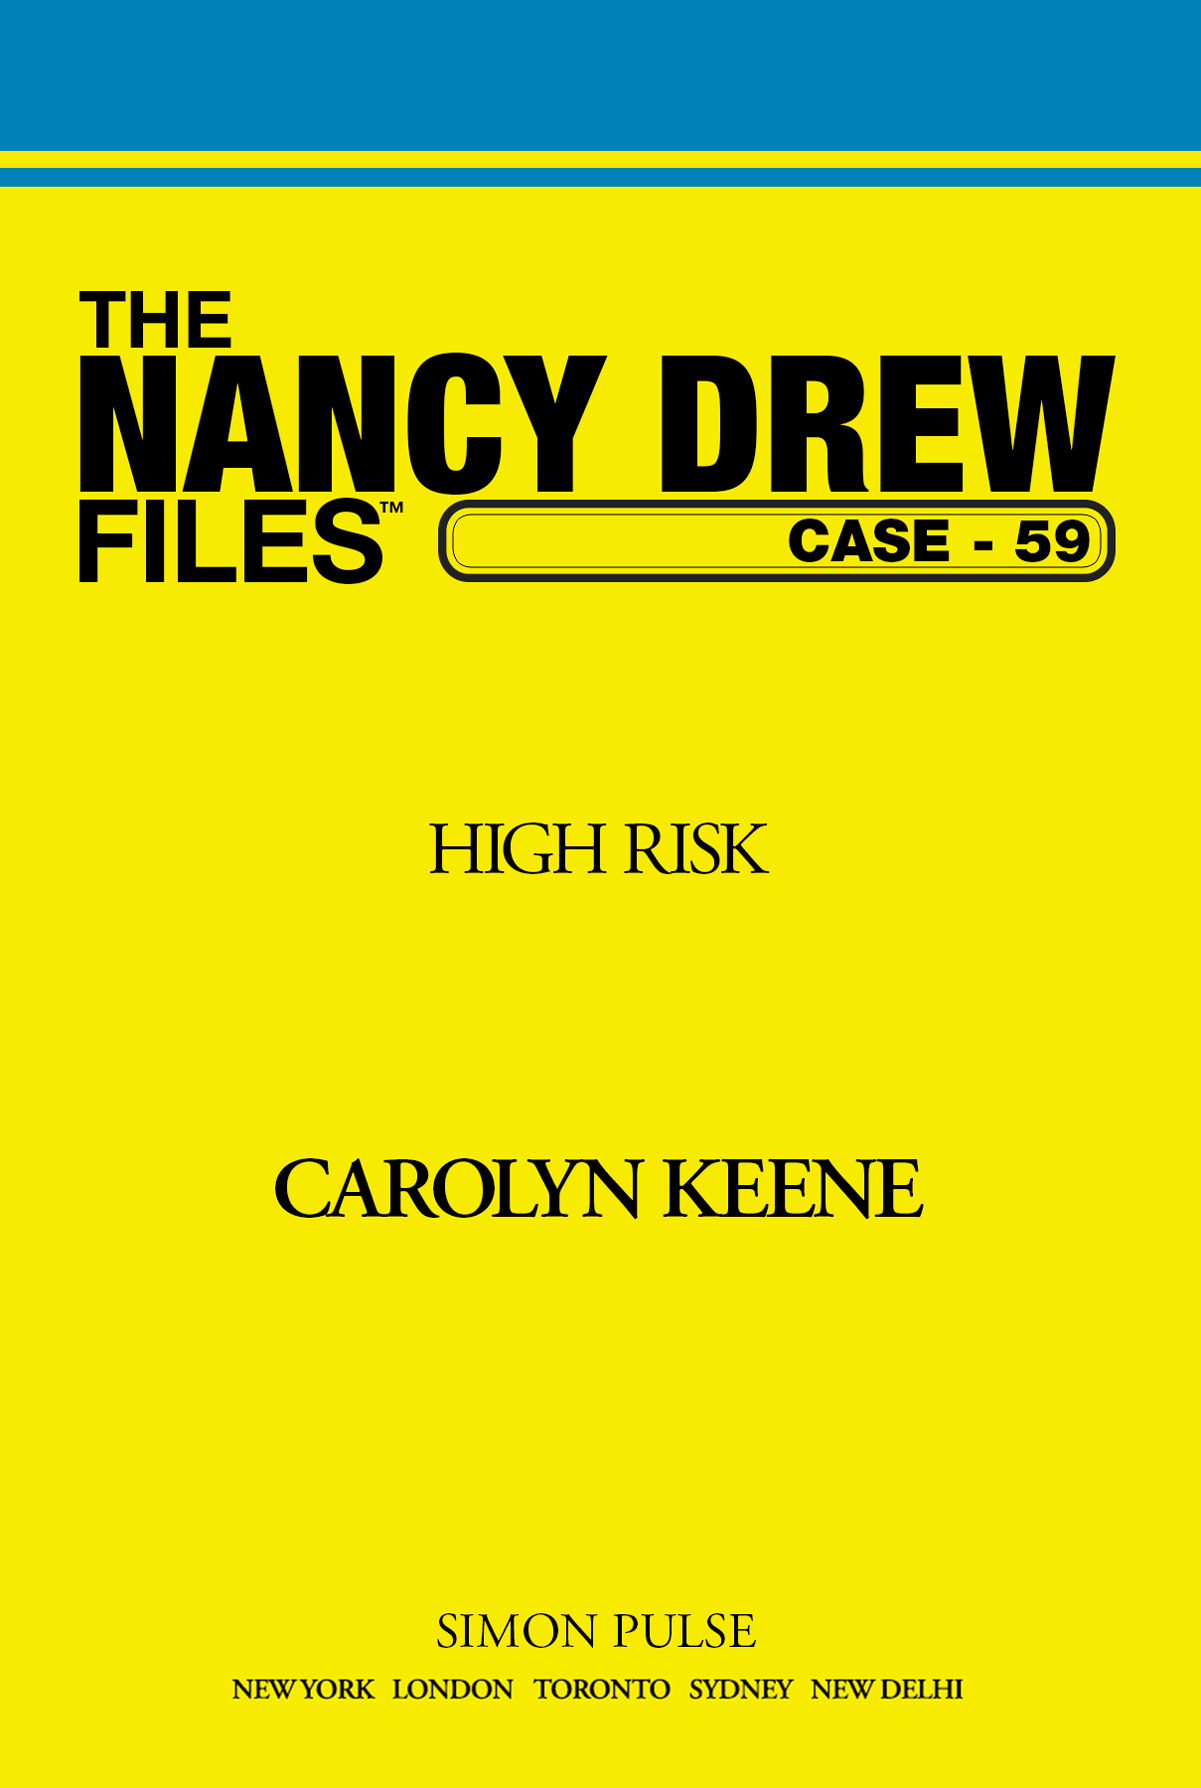 High Risk by Carolyn Keene